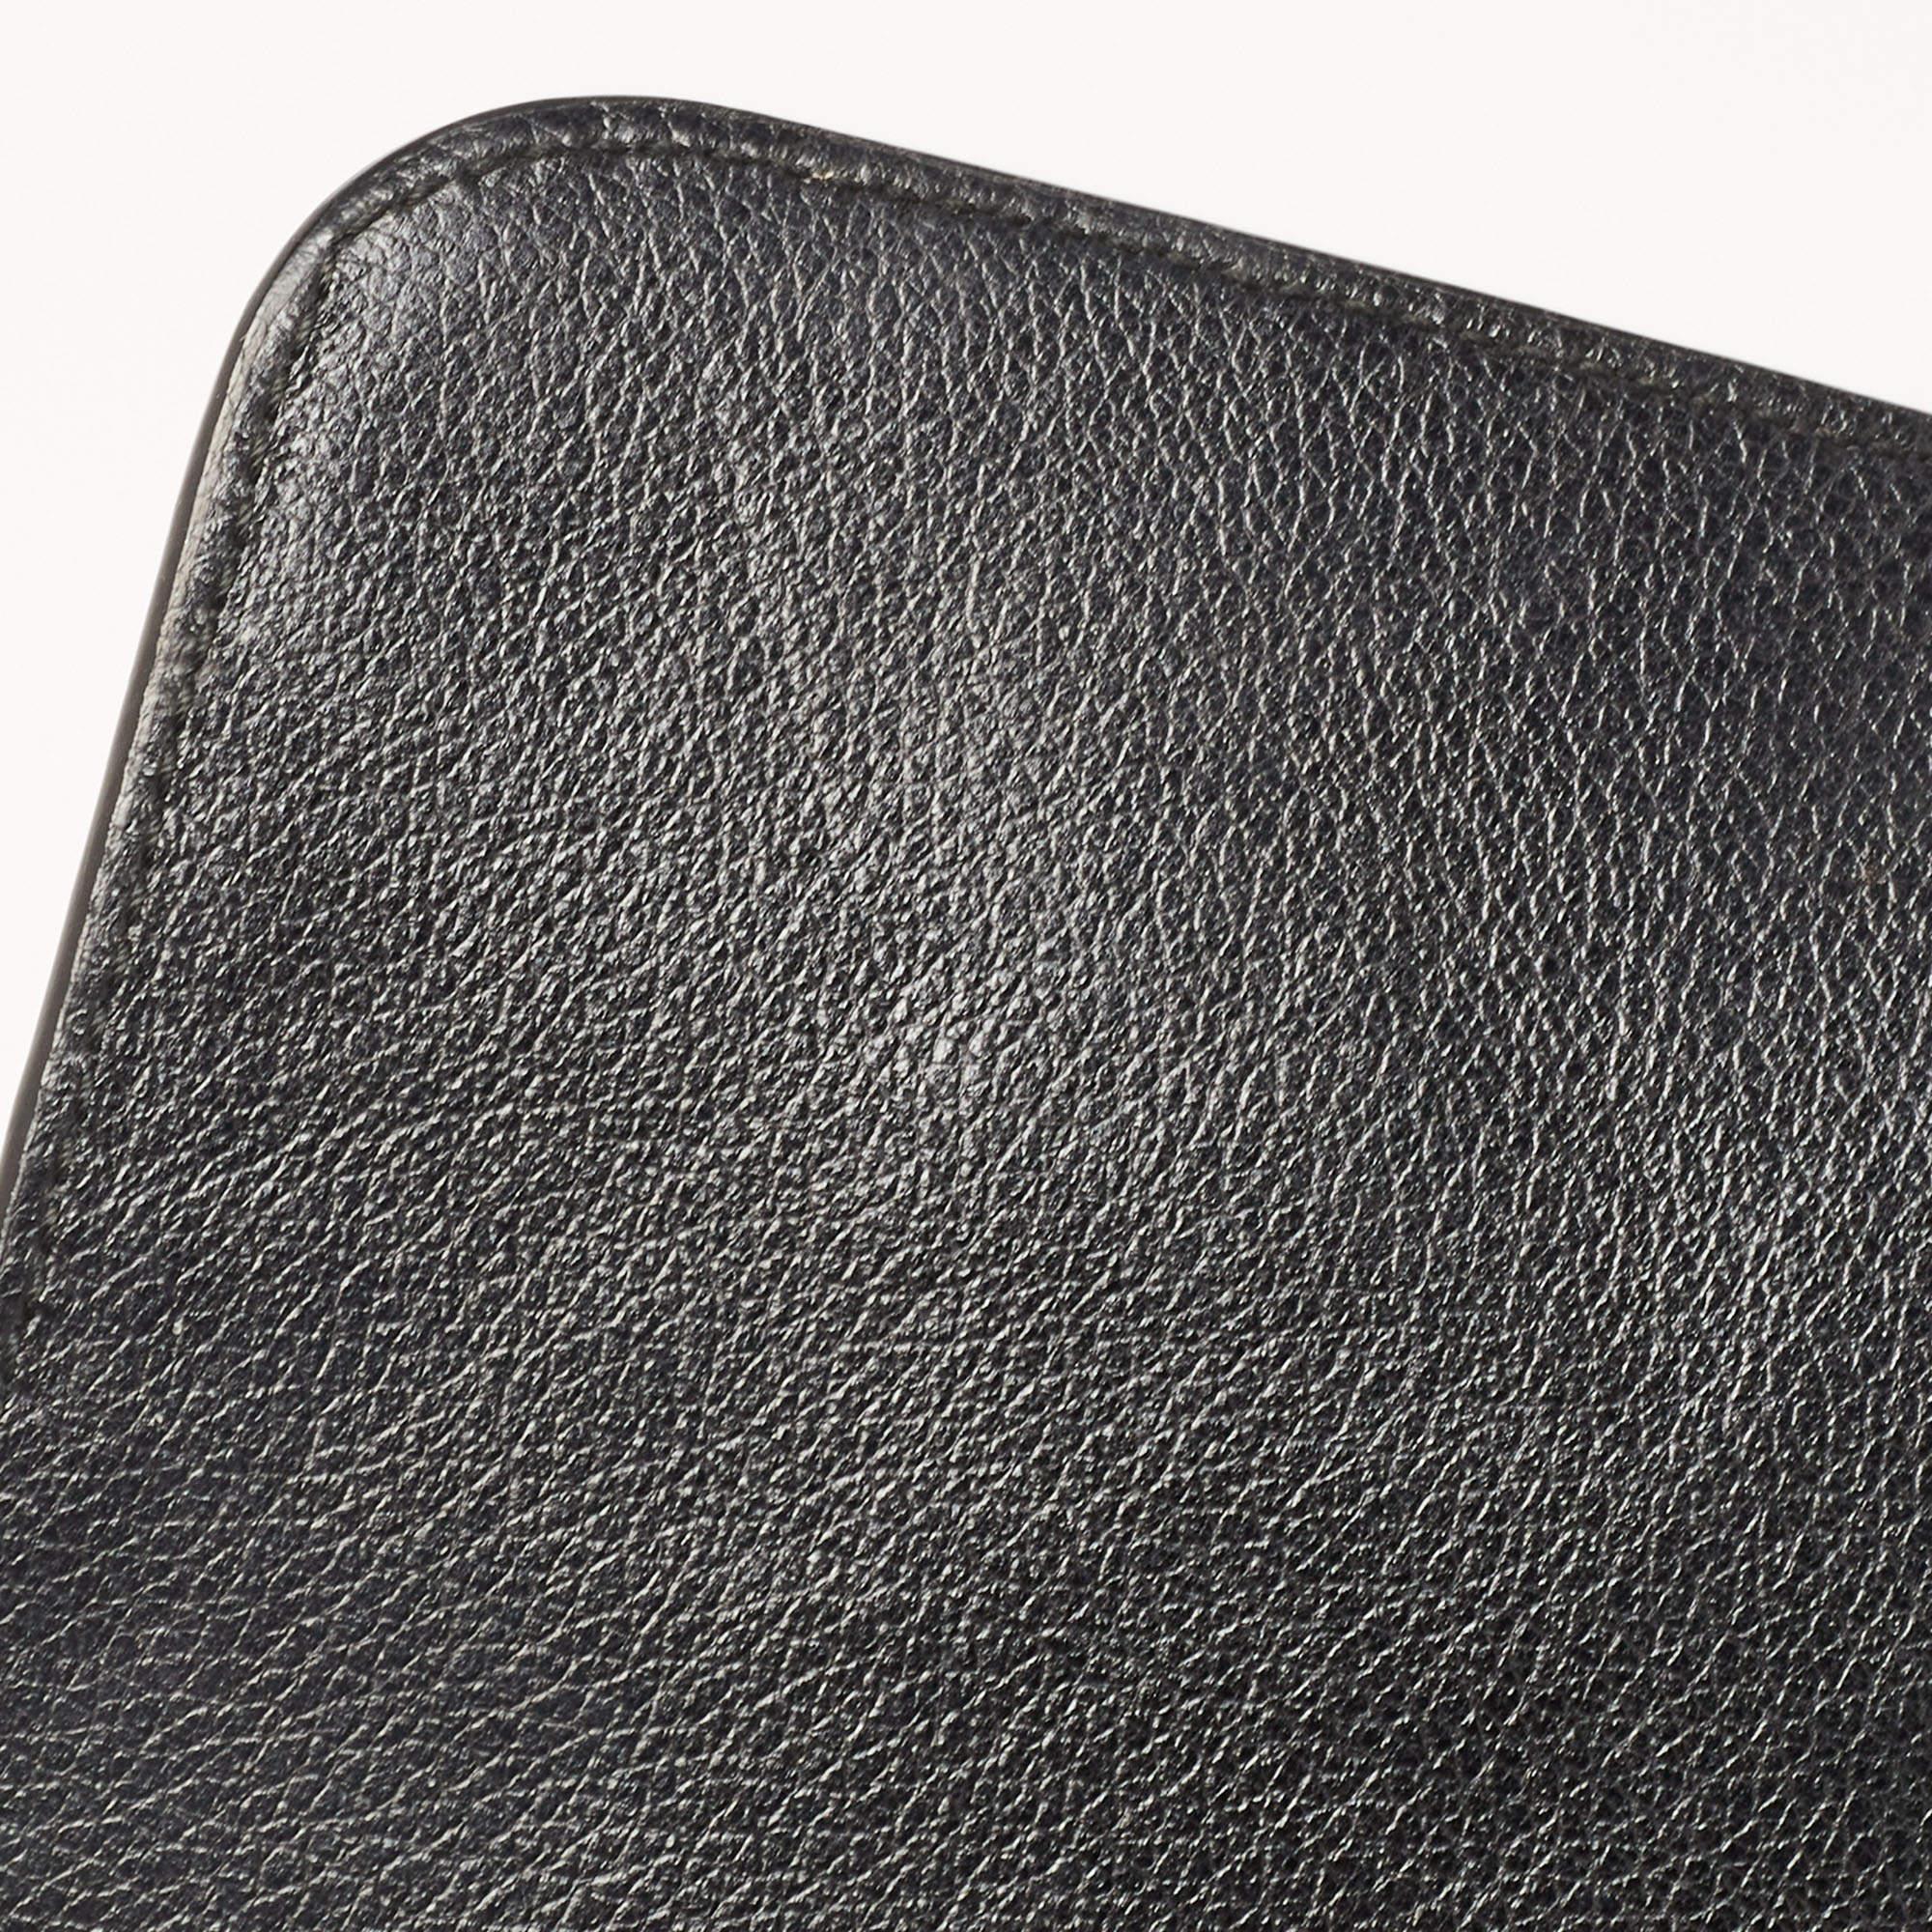 Prada Black Glace Leather Studded Flap Shoulder Bag 9